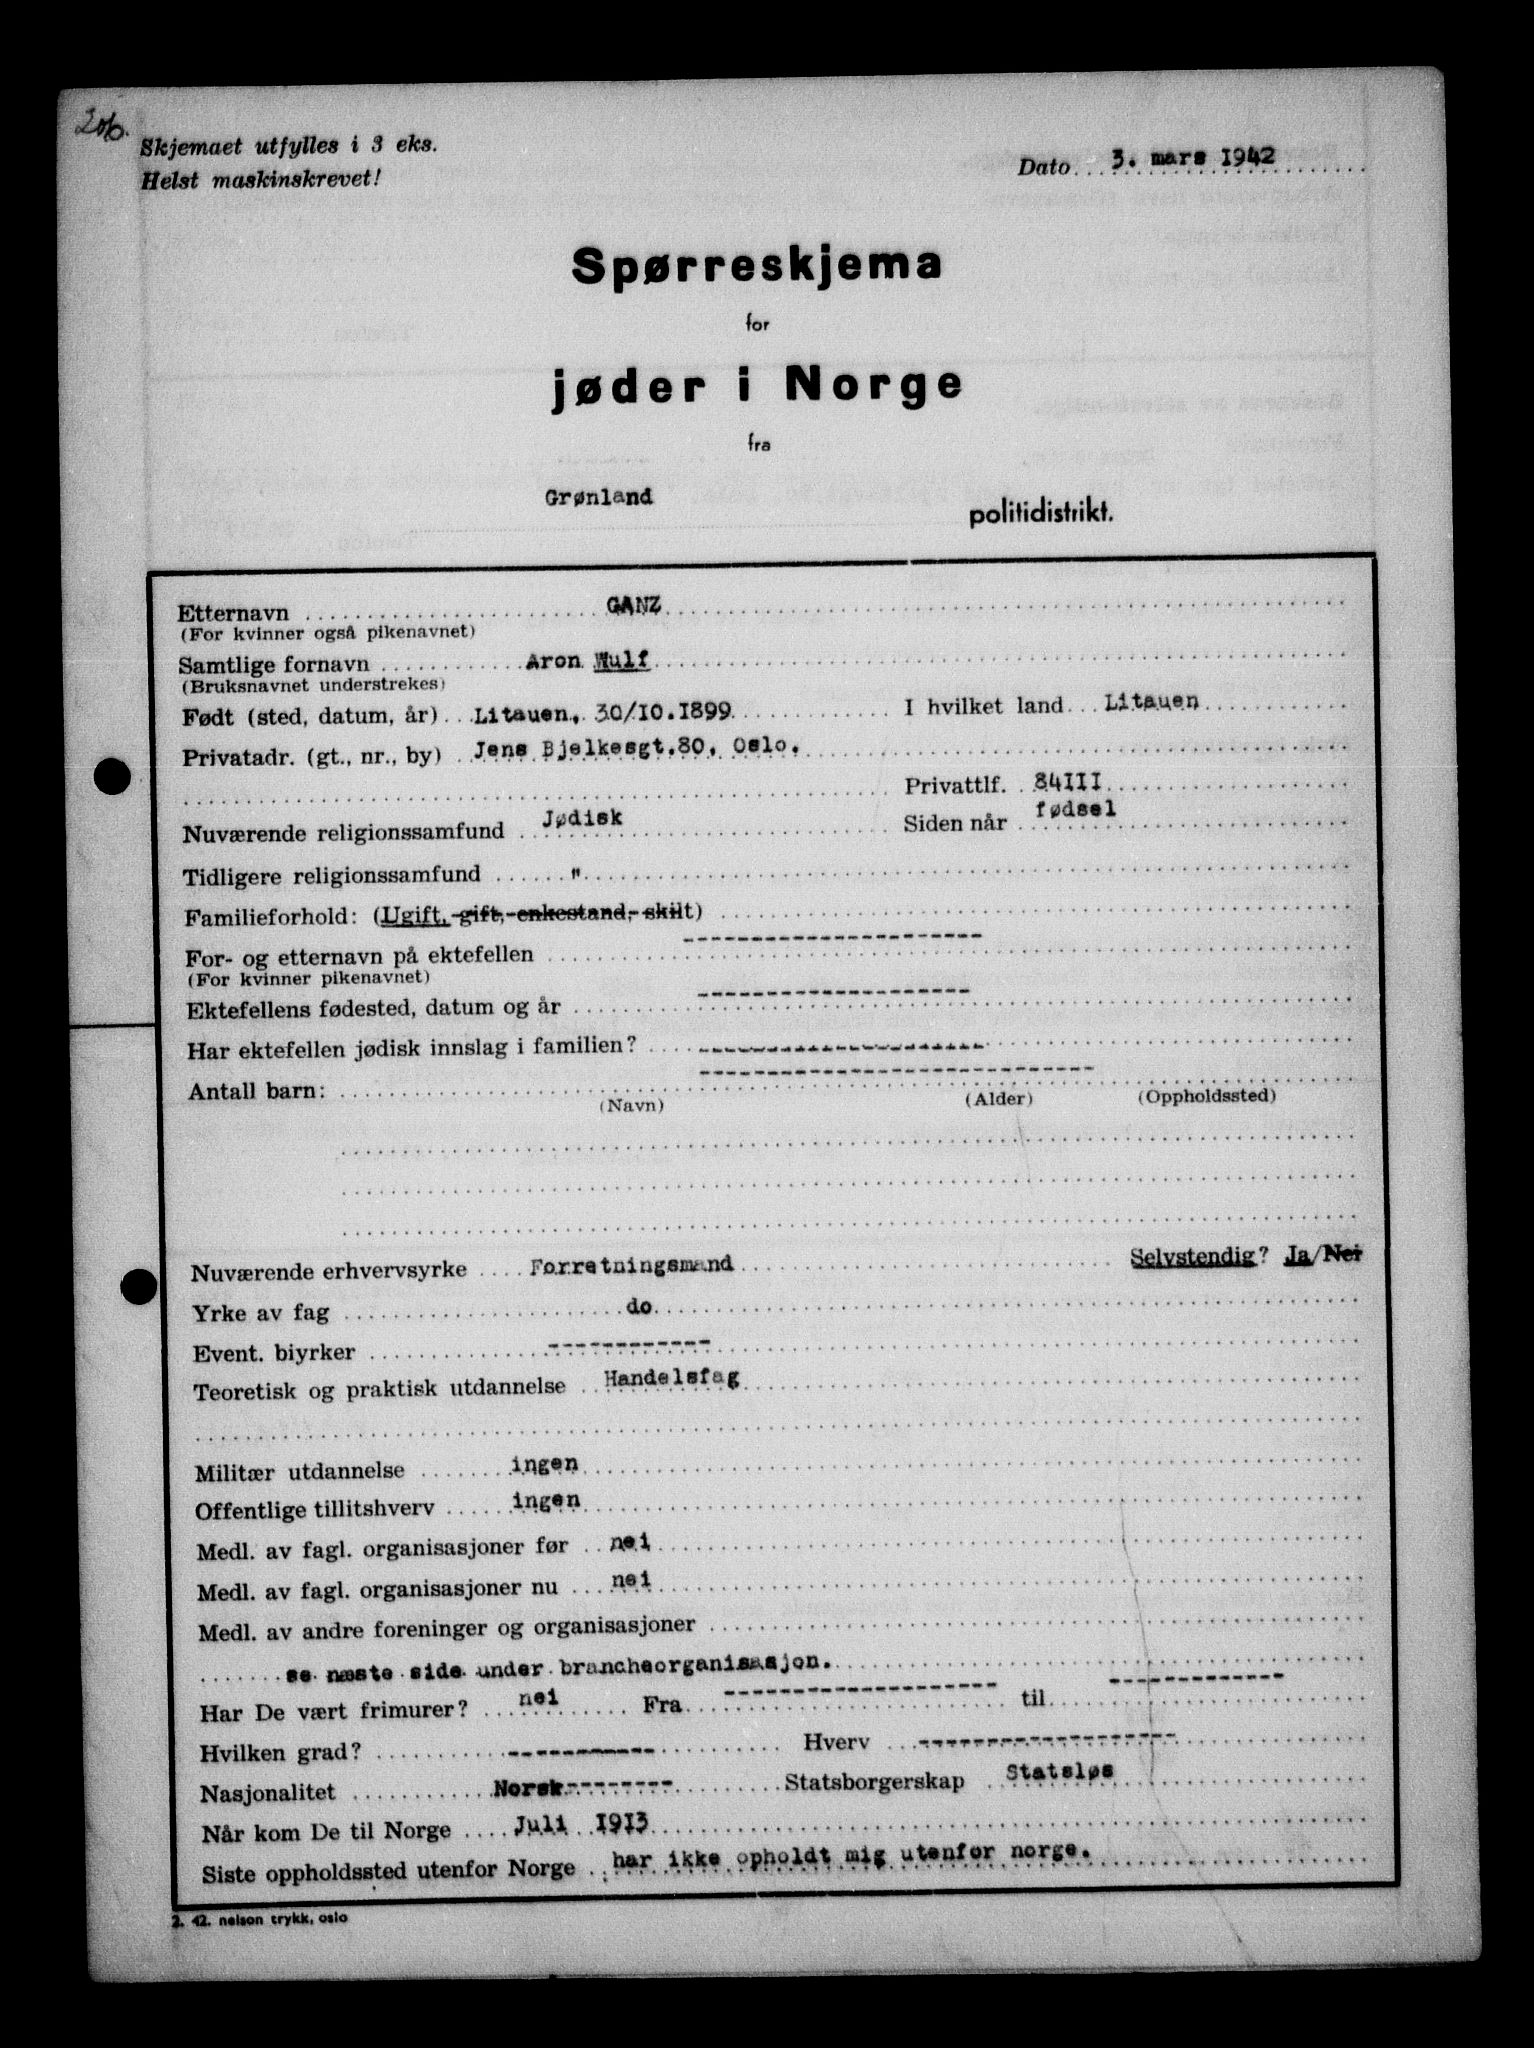 RA, Statspolitiet - Hovedkontoret / Osloavdelingen, G/Ga/L0009: Spørreskjema for jøder i Norge, Oslo Alexander-Gutman, 1942, s. 206